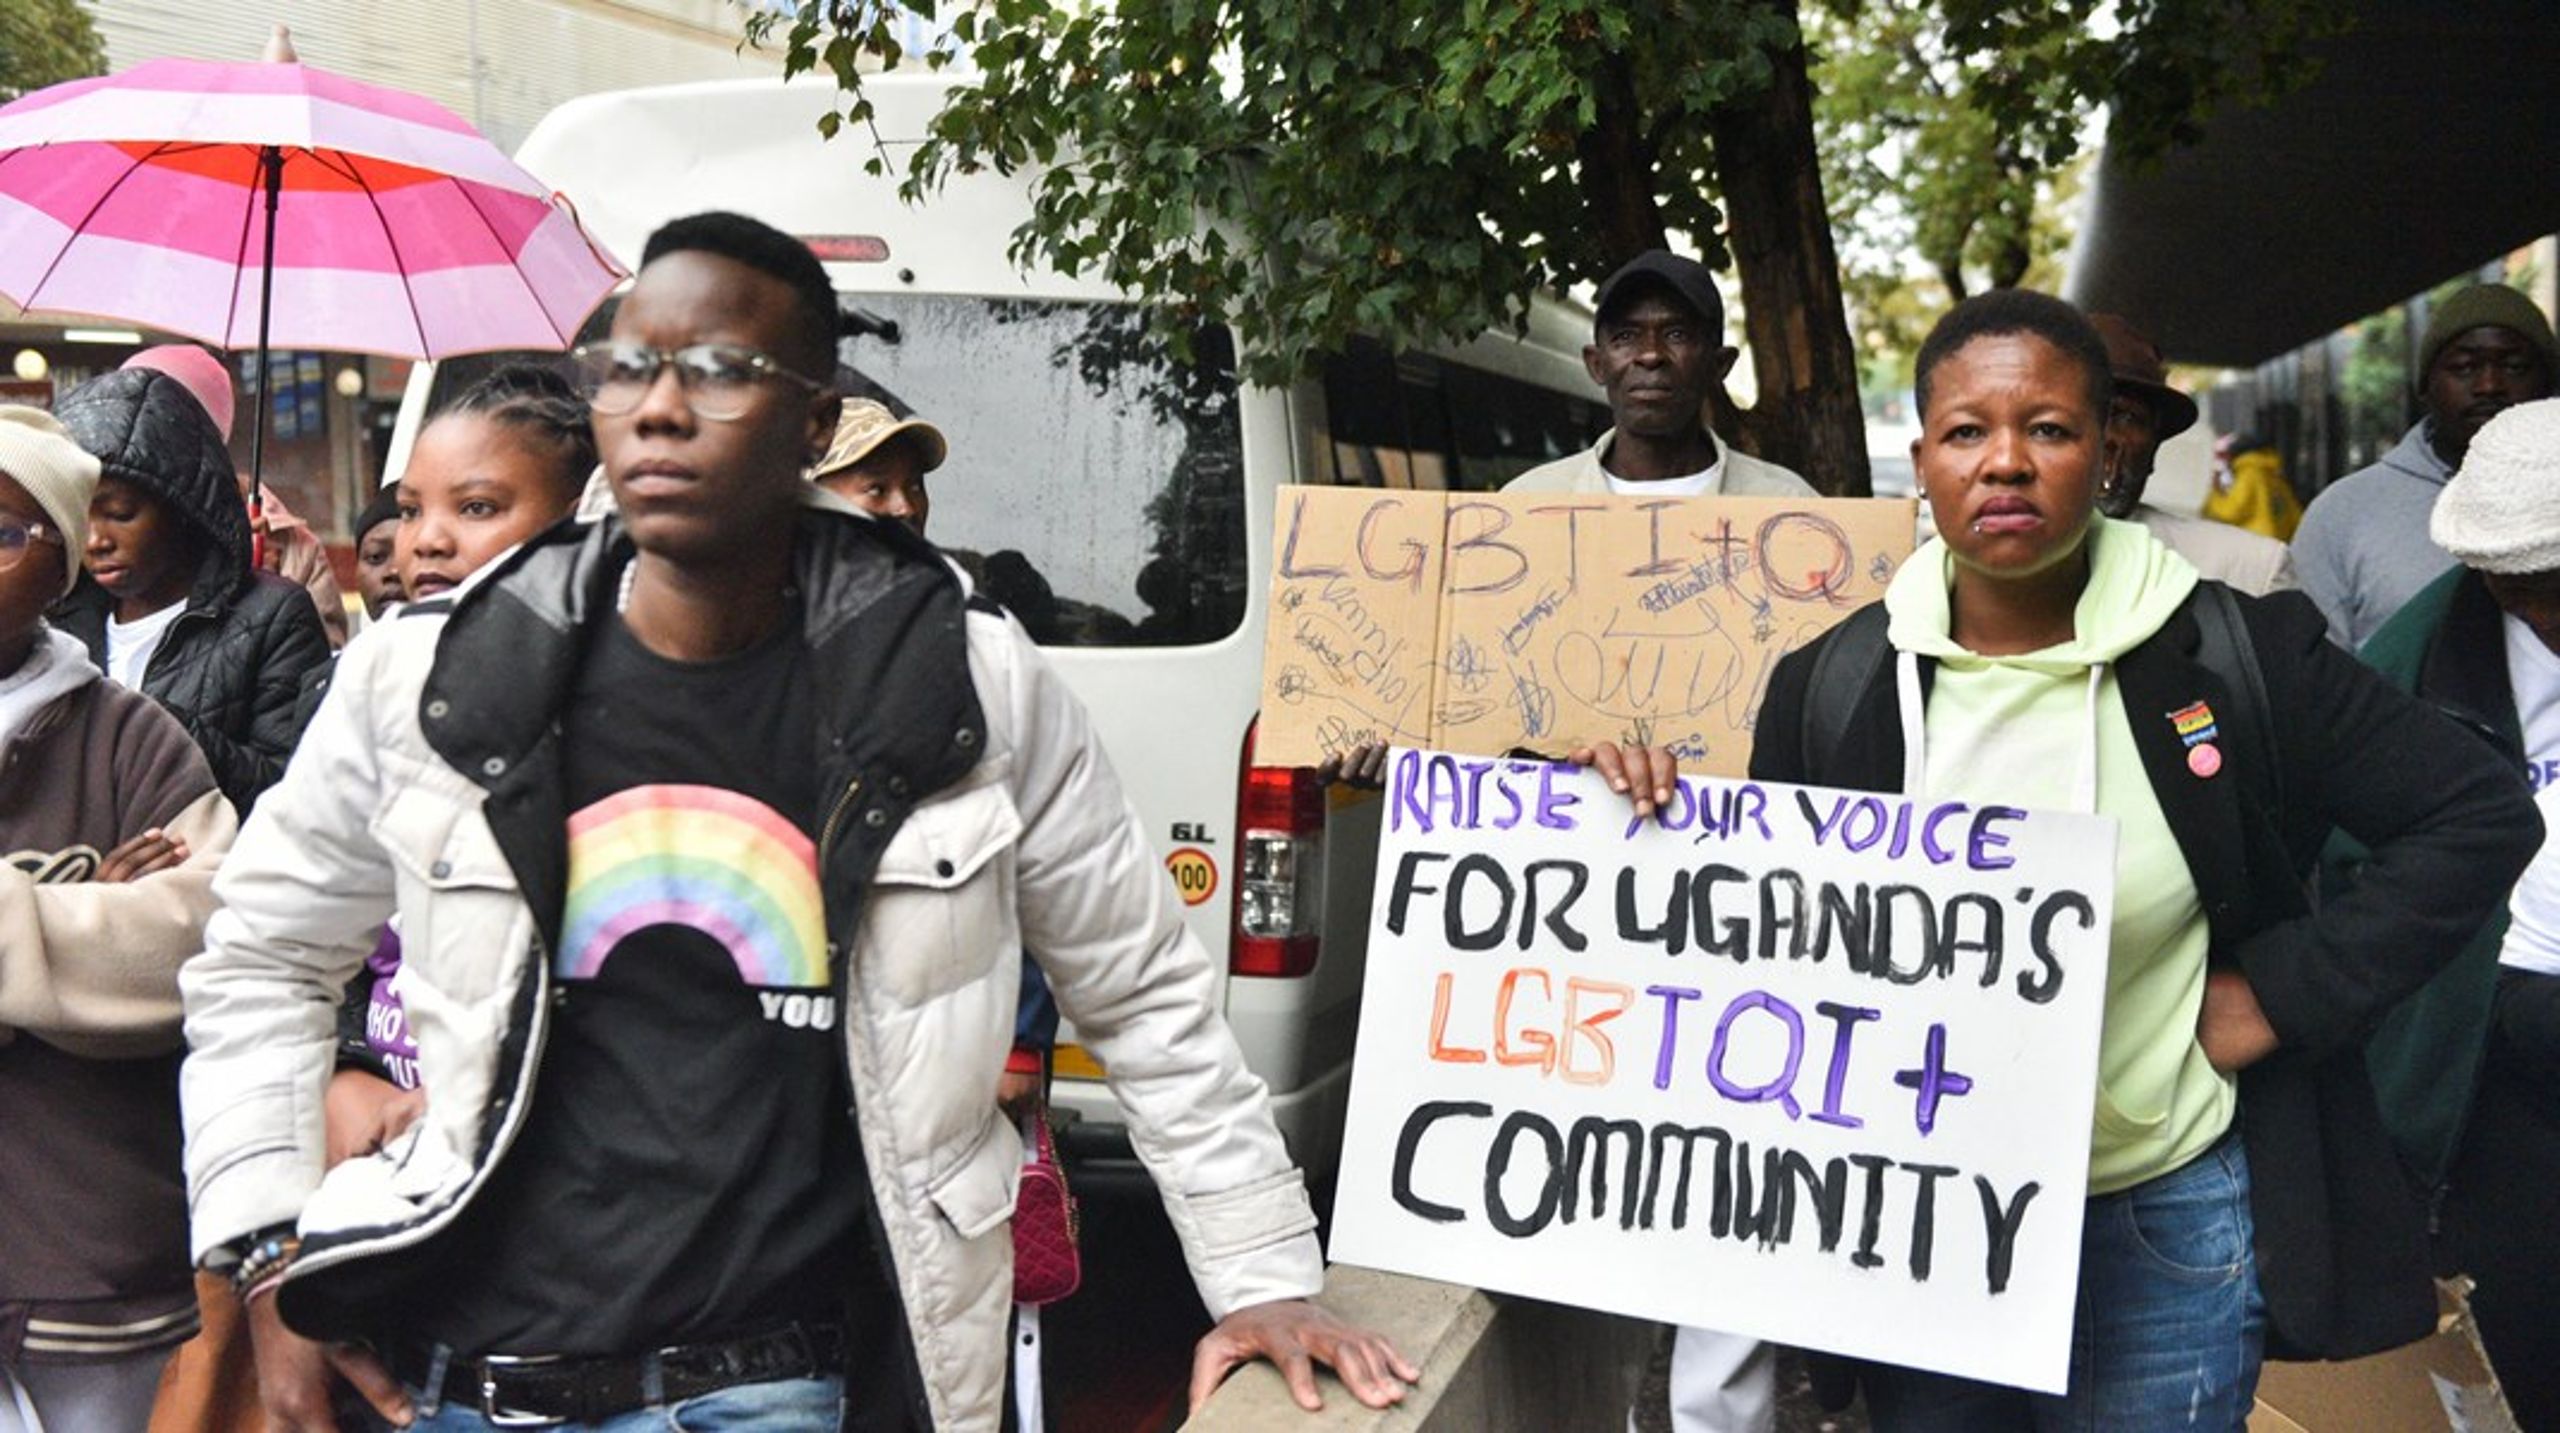 I Uganda er det for nyligt blevet vedtaget en lov,
som kan give homoseksuelle dødsstraf. Det stiller vestlige lande i et 
dilemma om, i hvor høj grad man kan og bør føre politik gennem 
udviklingsbistand, skriver Bård Vegar Solhjell.<br>